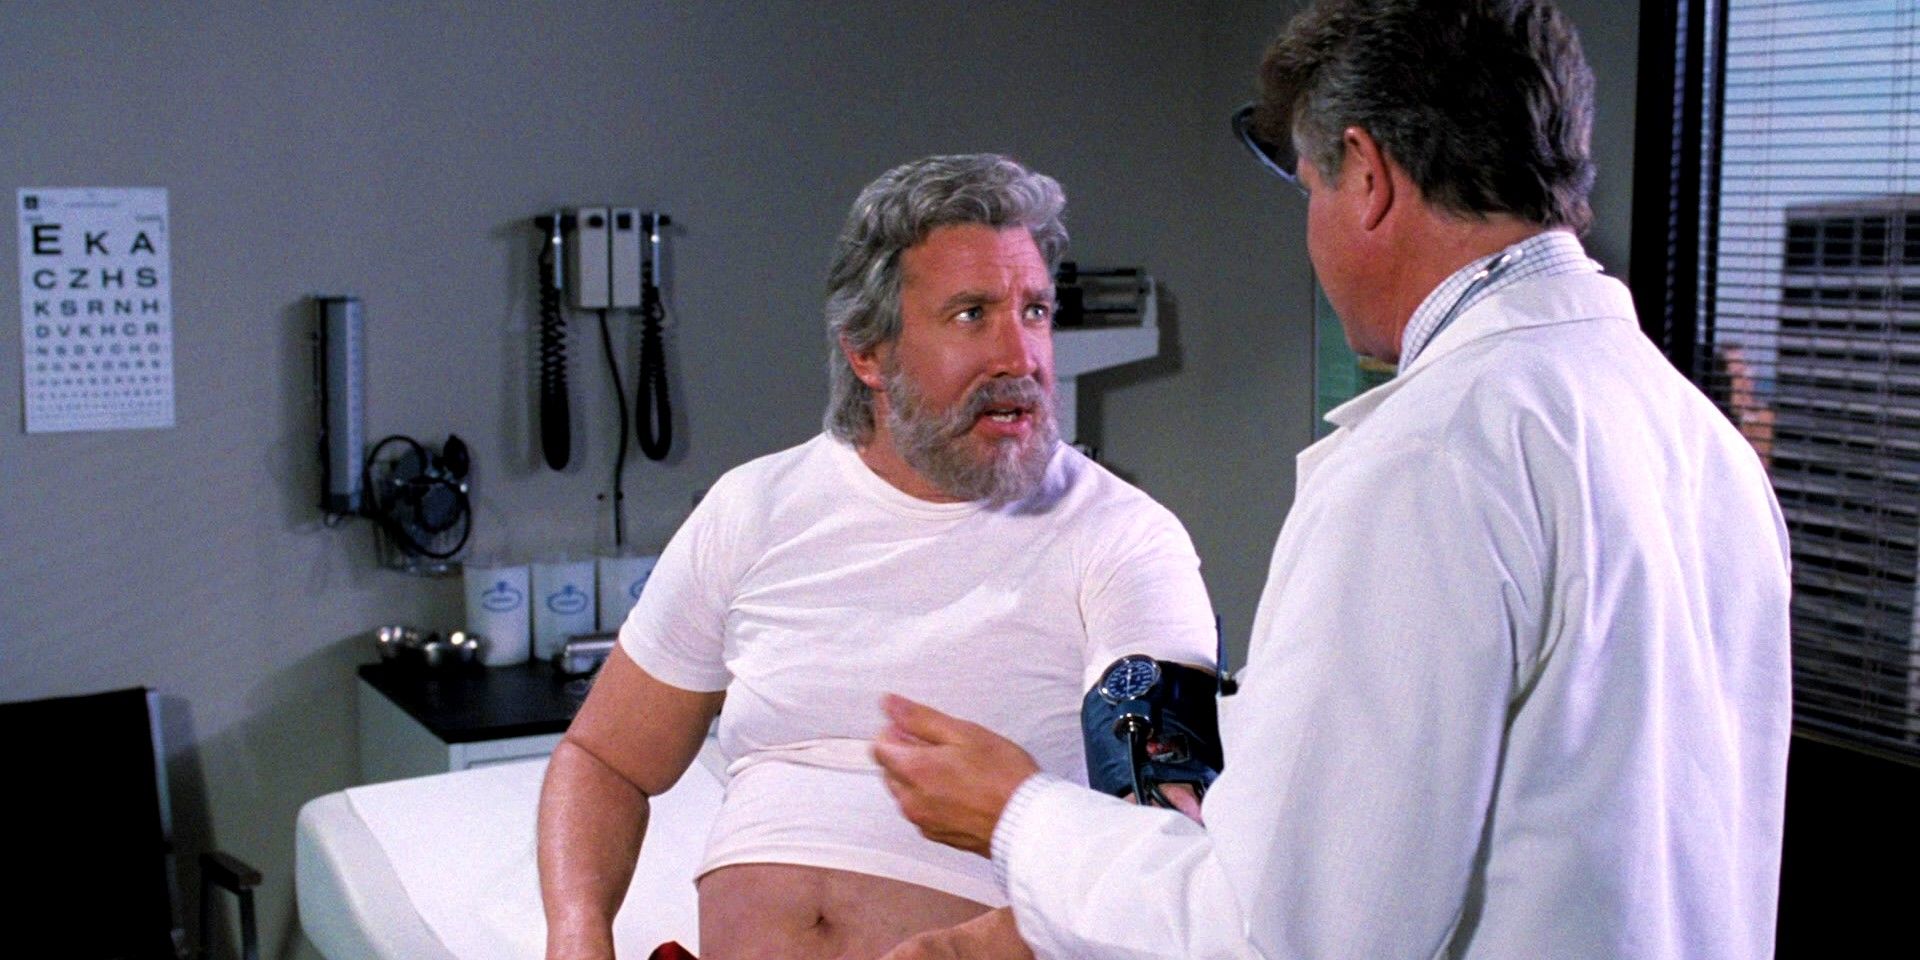 "Por favor, obtenga una estadística de electrocardiograma": el chequeo médico de Scott Calvin en Santa Claus fue brutalmente desmantelado por un verdadero experto médico